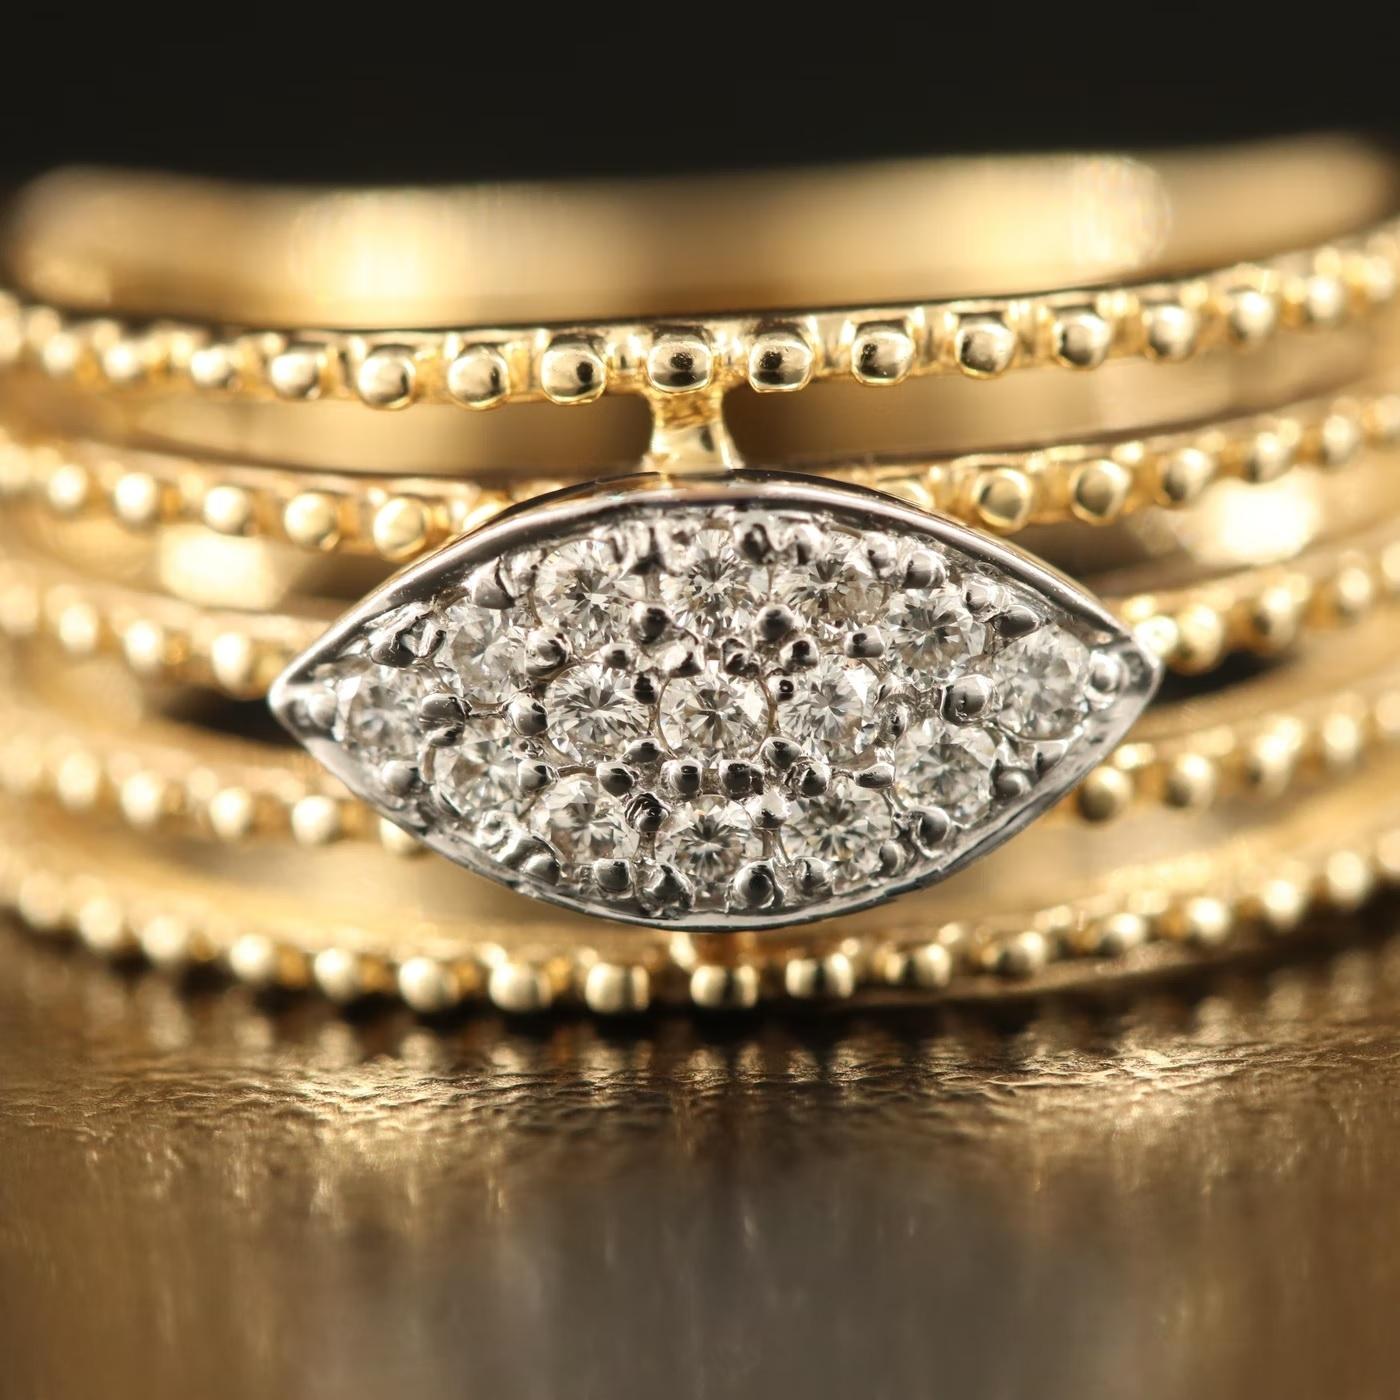 Ring Sonia B, gestempelt und gestempelt mit dem Namen des Designers 

NEU MIT TAGS, Tag Preis $4450

Erstaunliches Design mit funkelndem Diamanten

0.35 CT von hoher Qualität Diamant (G / SI-VS Diamant), hohe Qualität farblos
        
14K Gelbgold,